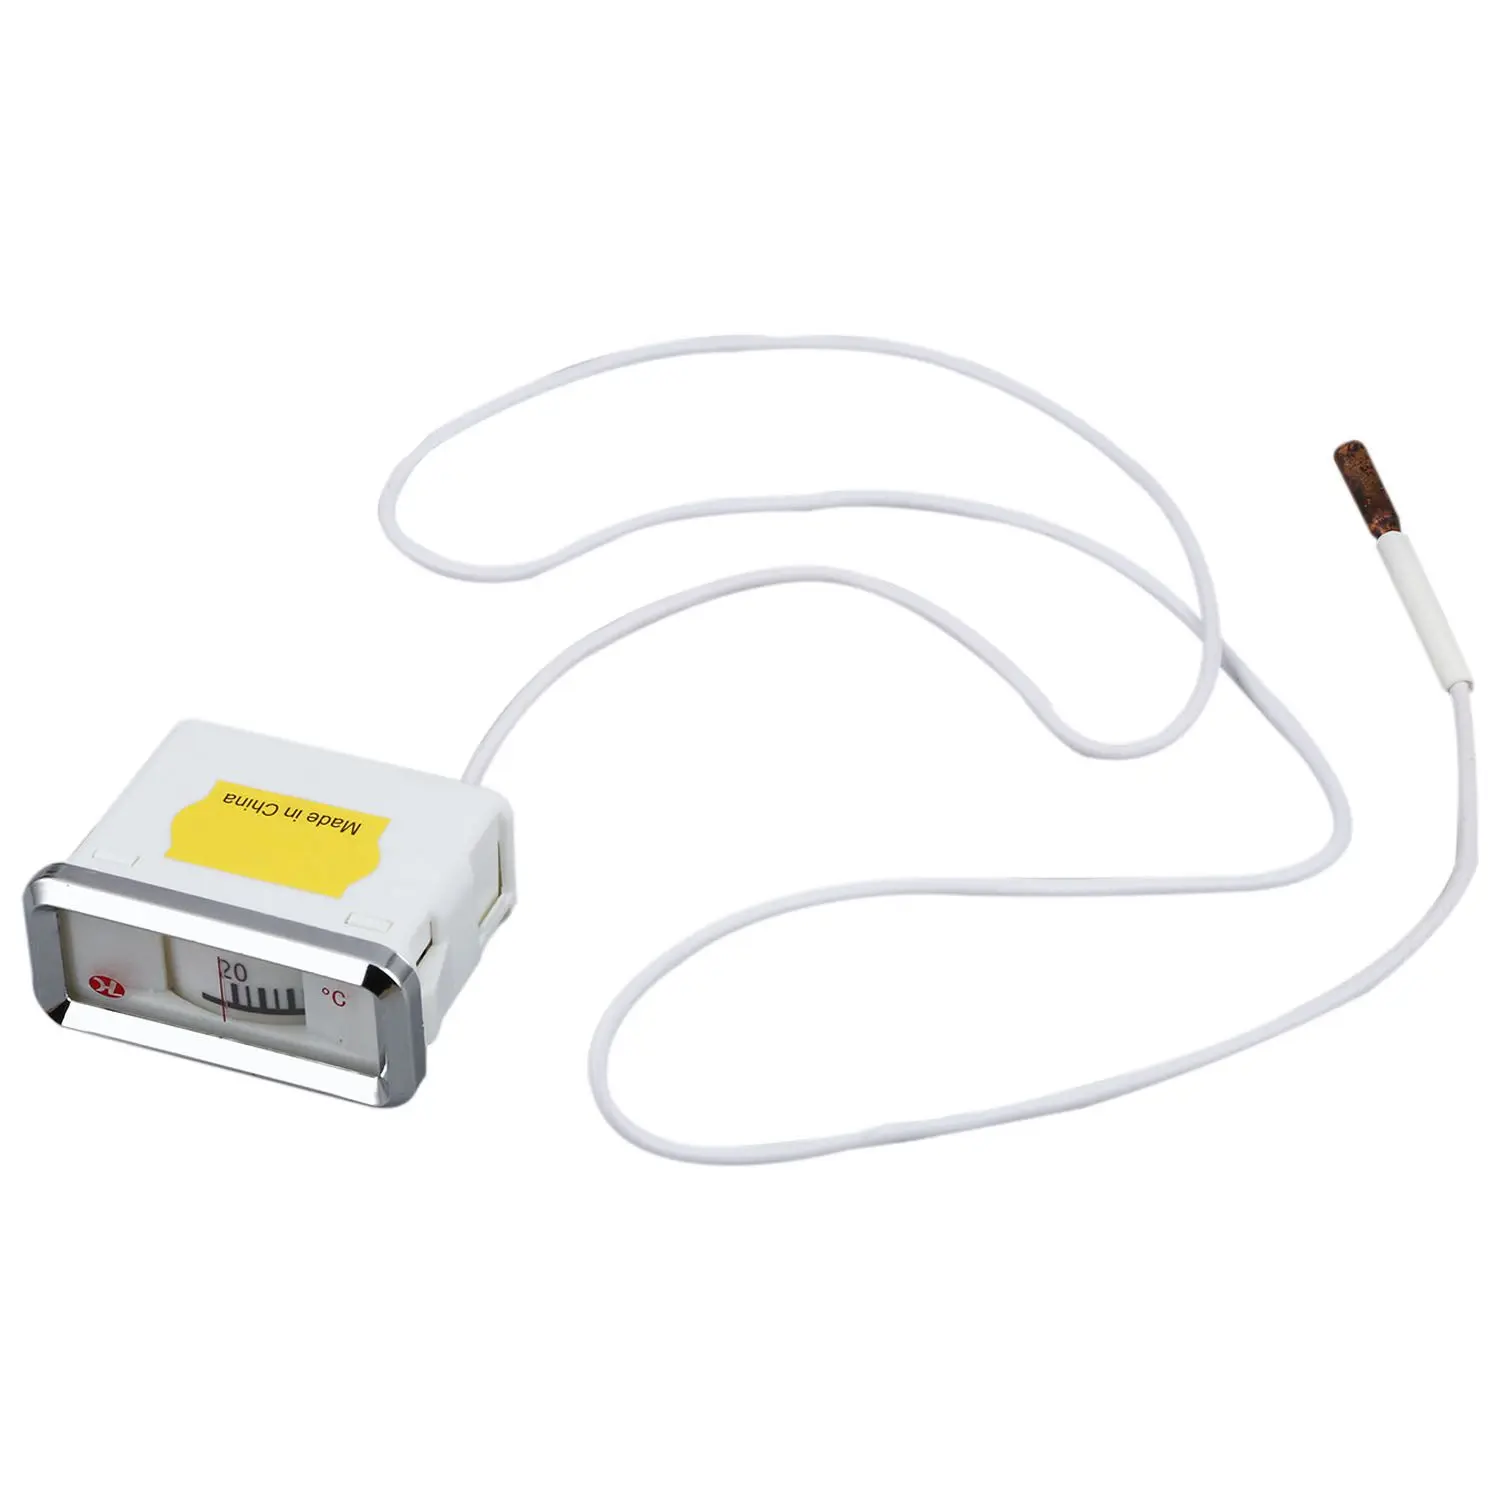 20-110 градусов Цельсия котел для горячей воды лабораторный термометр измерительный датчик температуры - Цвет: White